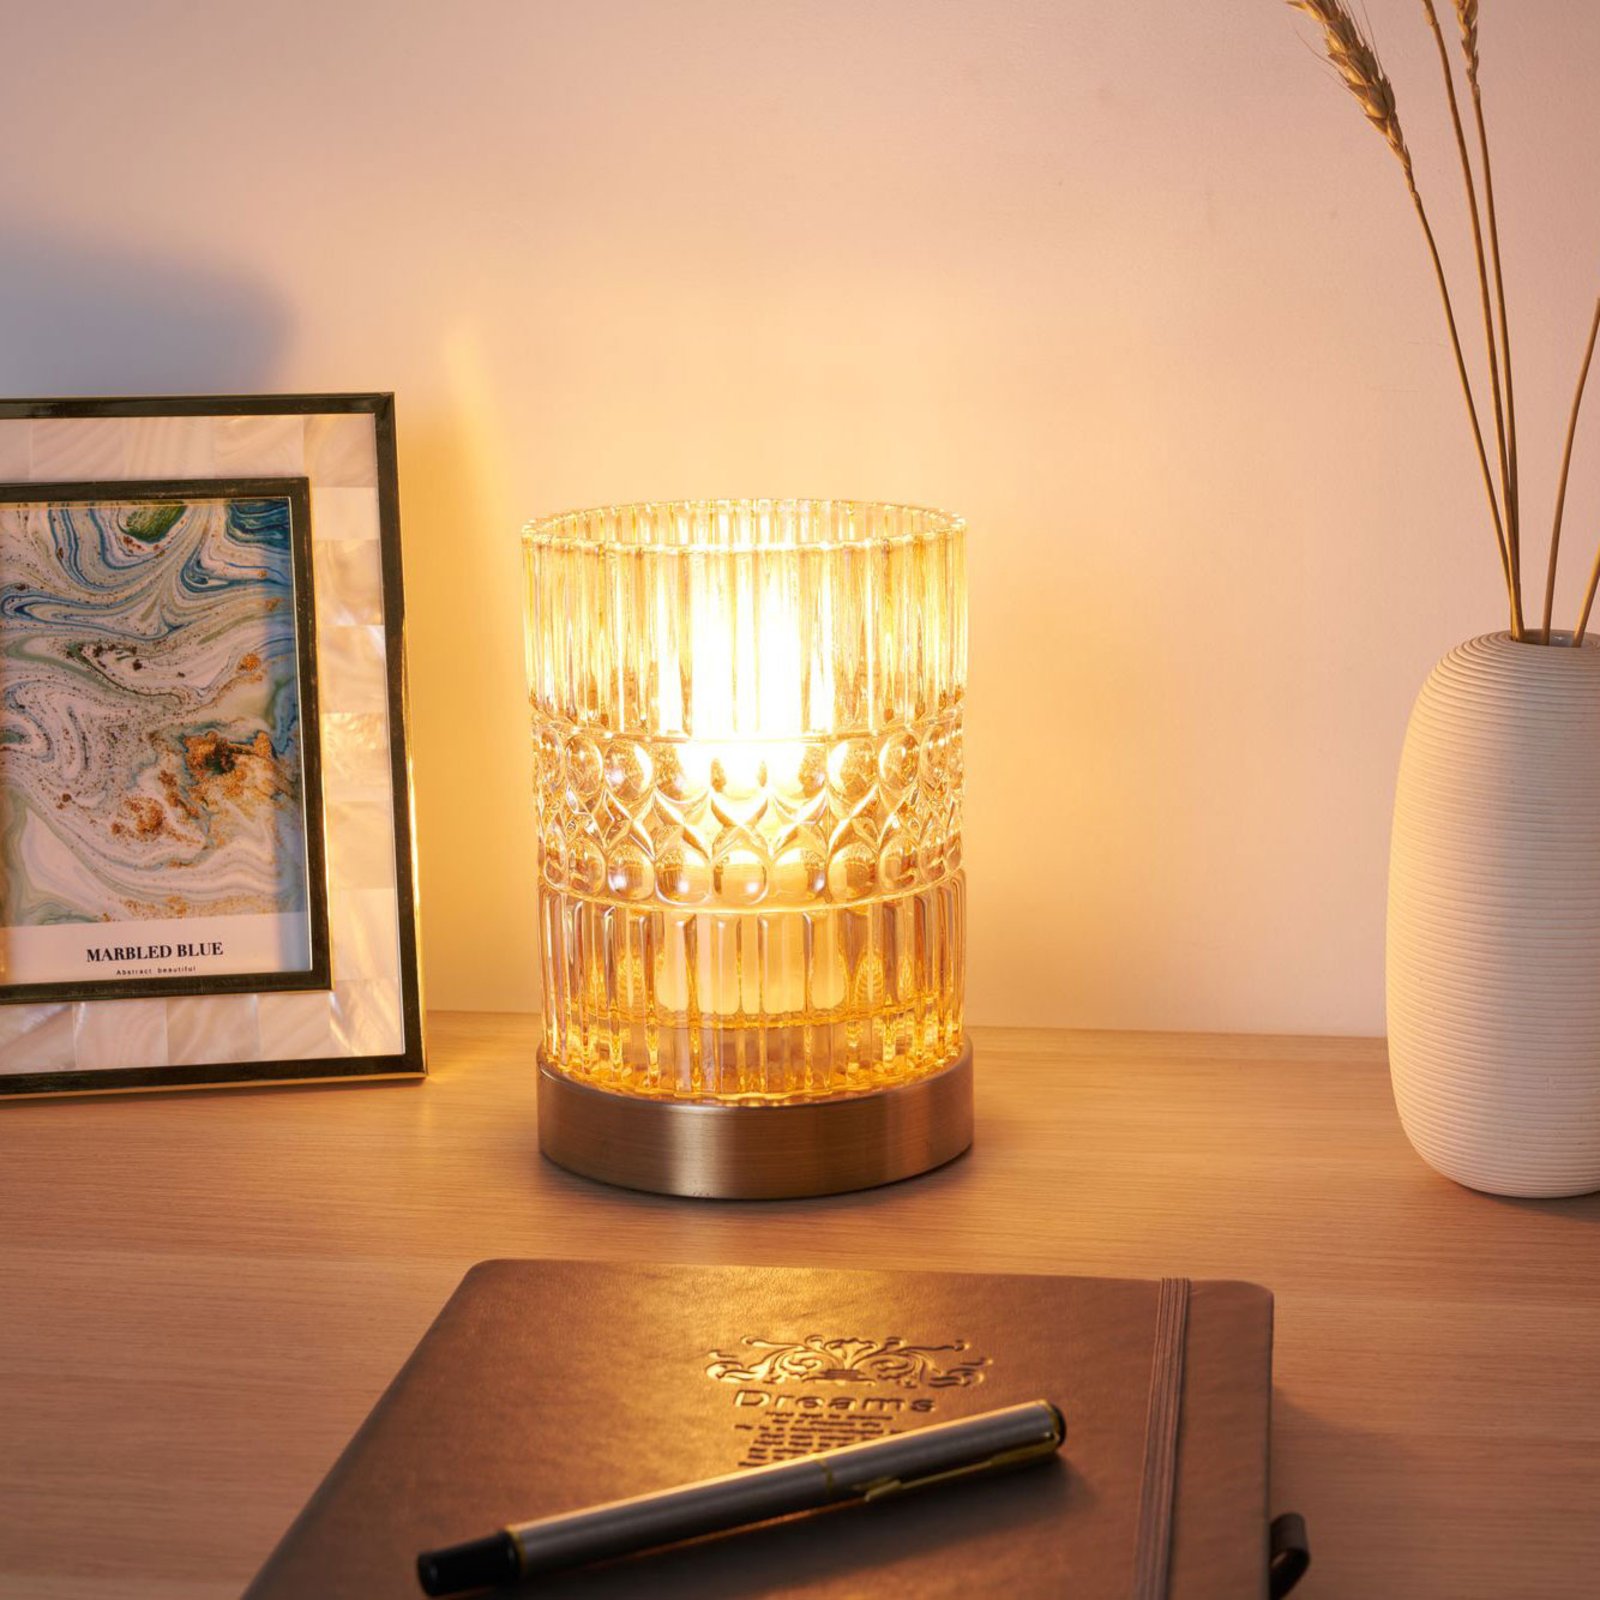 Pauleen Crystal Elegance bordlampe av glass